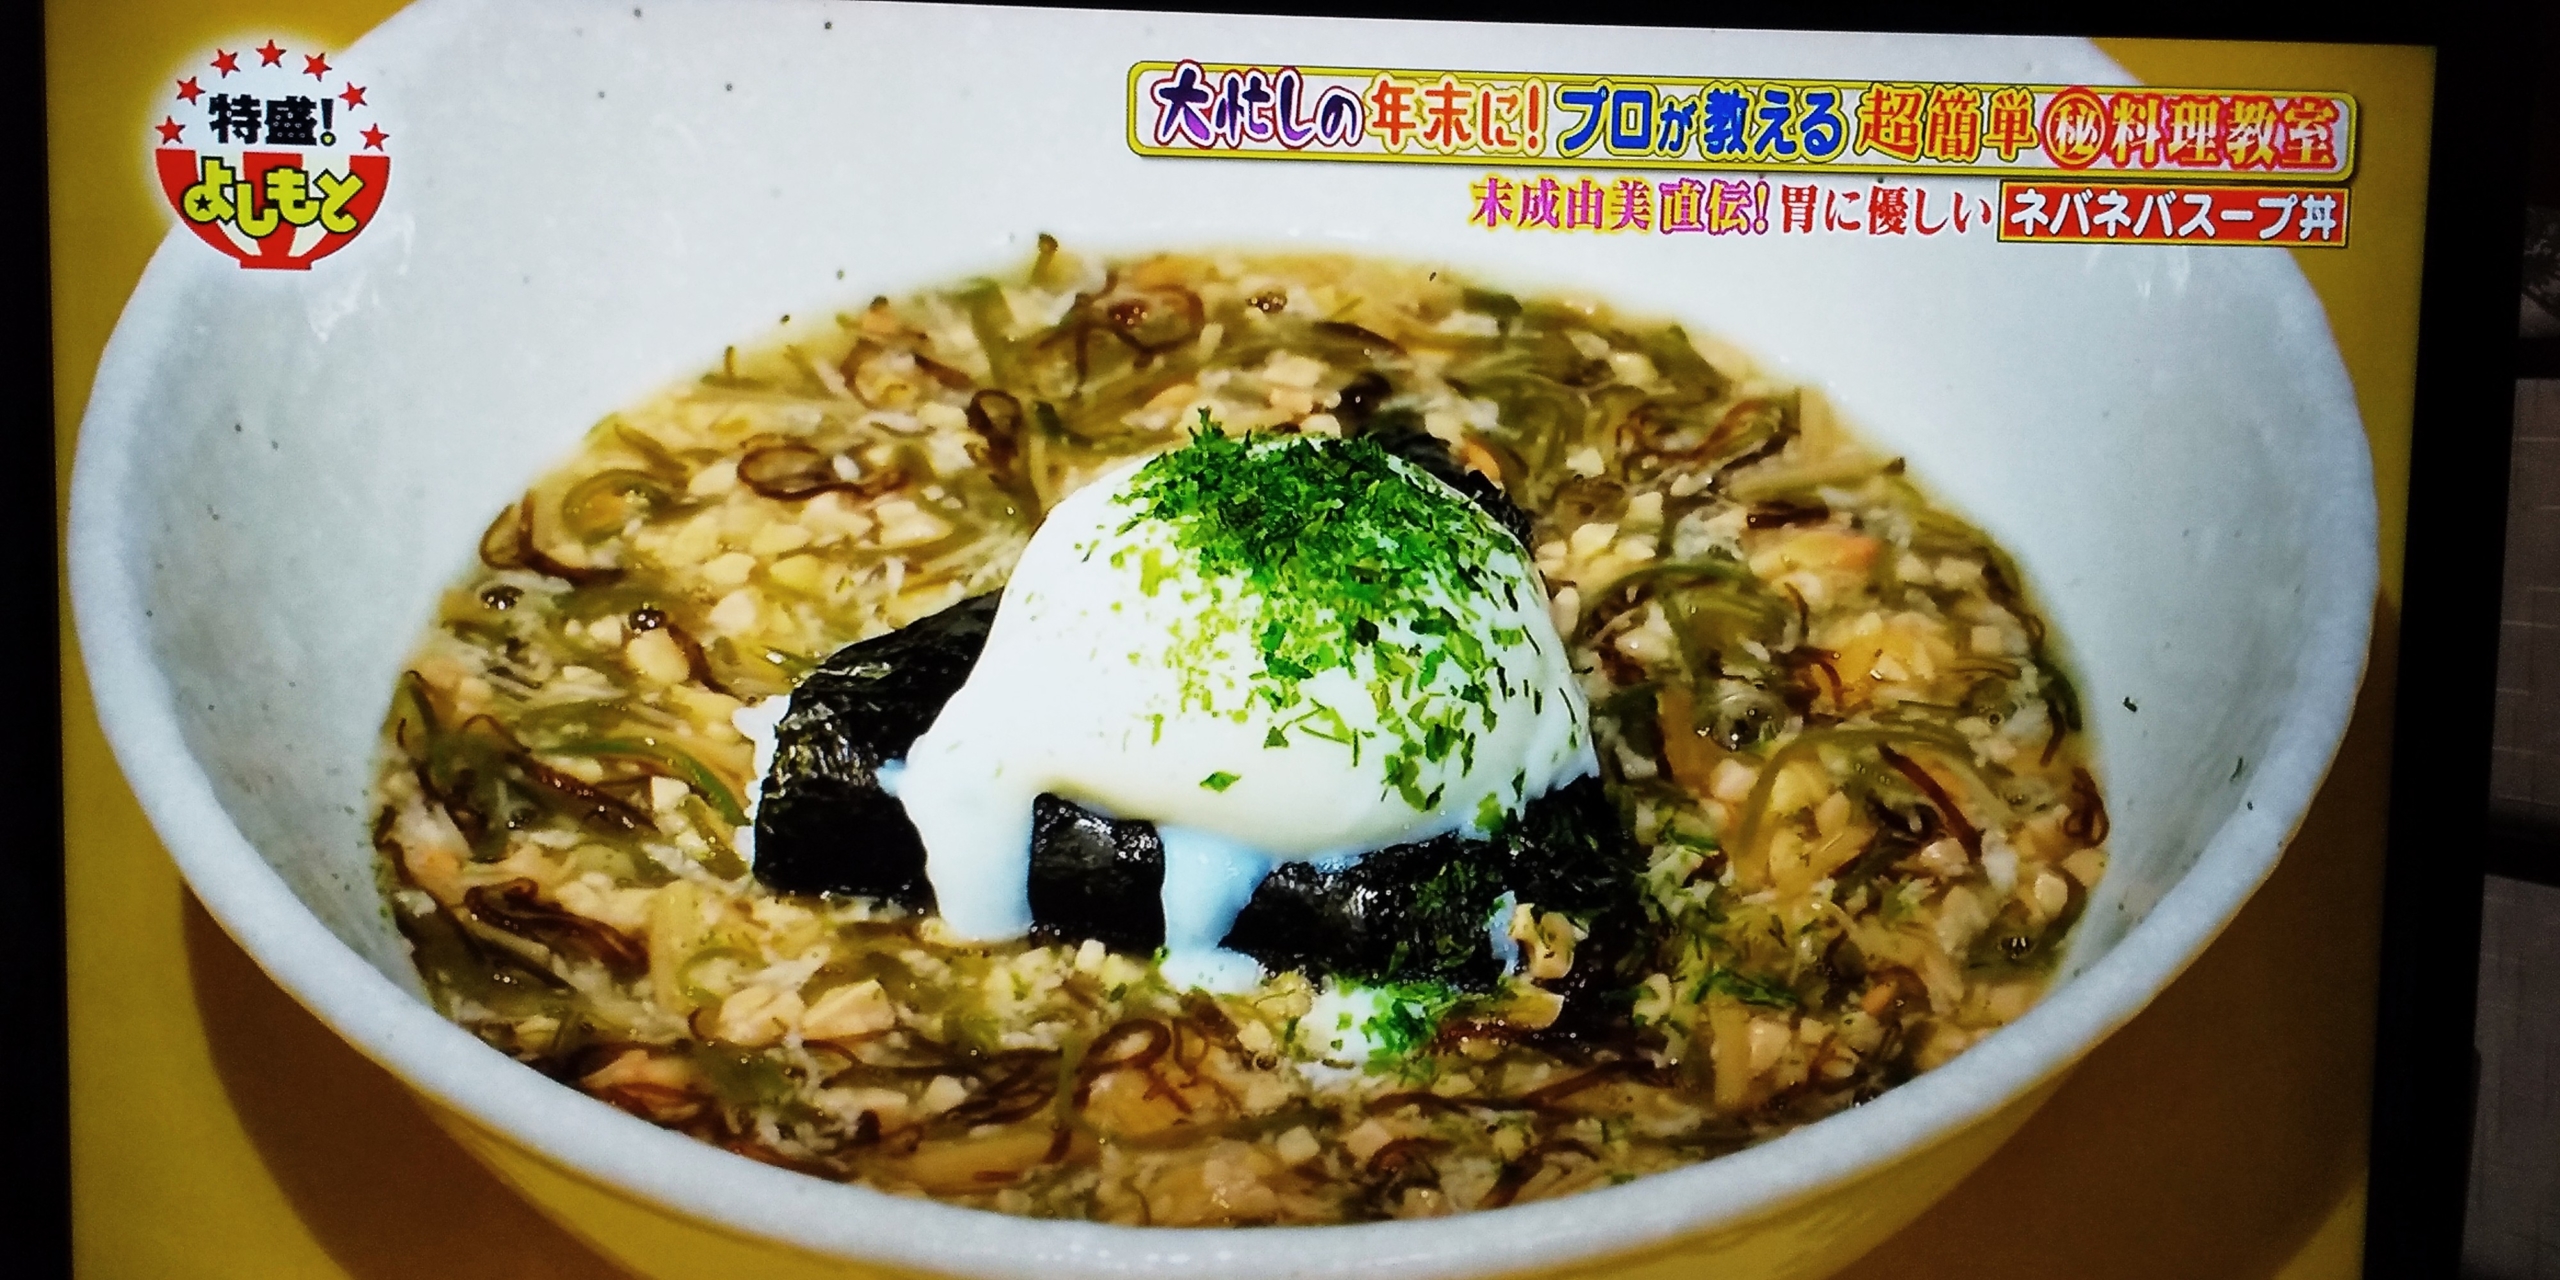 末成由美さん特製ネバネバスープ丼レシピ